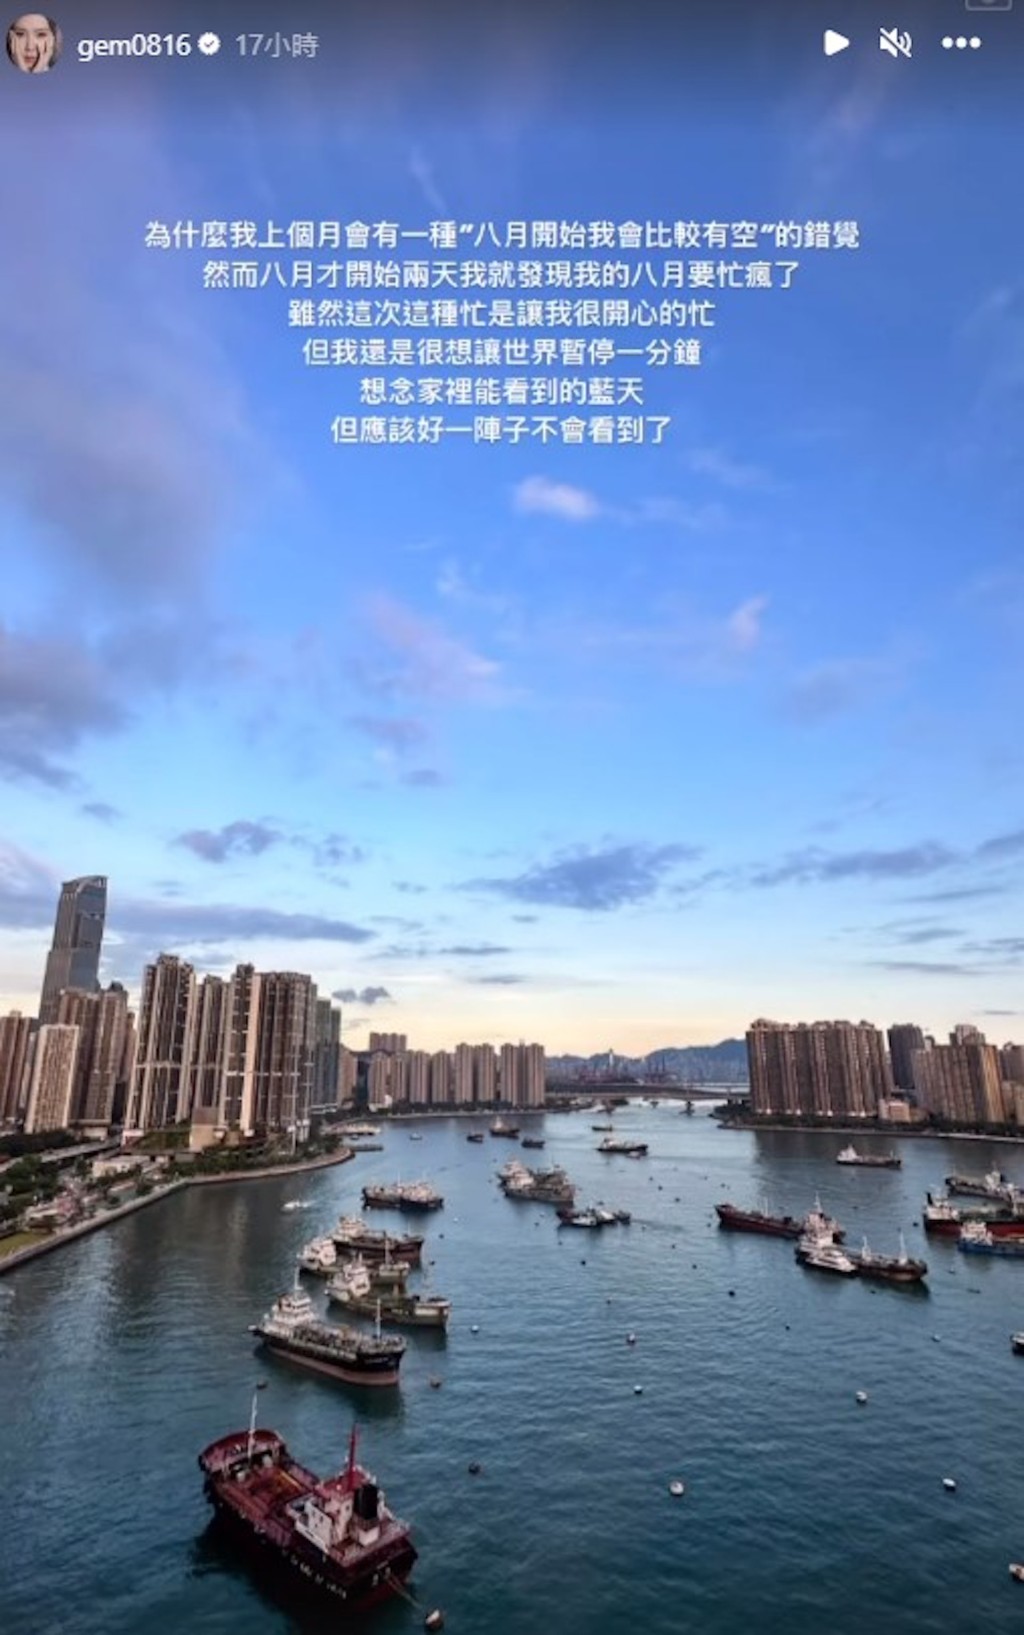 邓紫棋的荃湾千尺豪宅拥无敌海景。